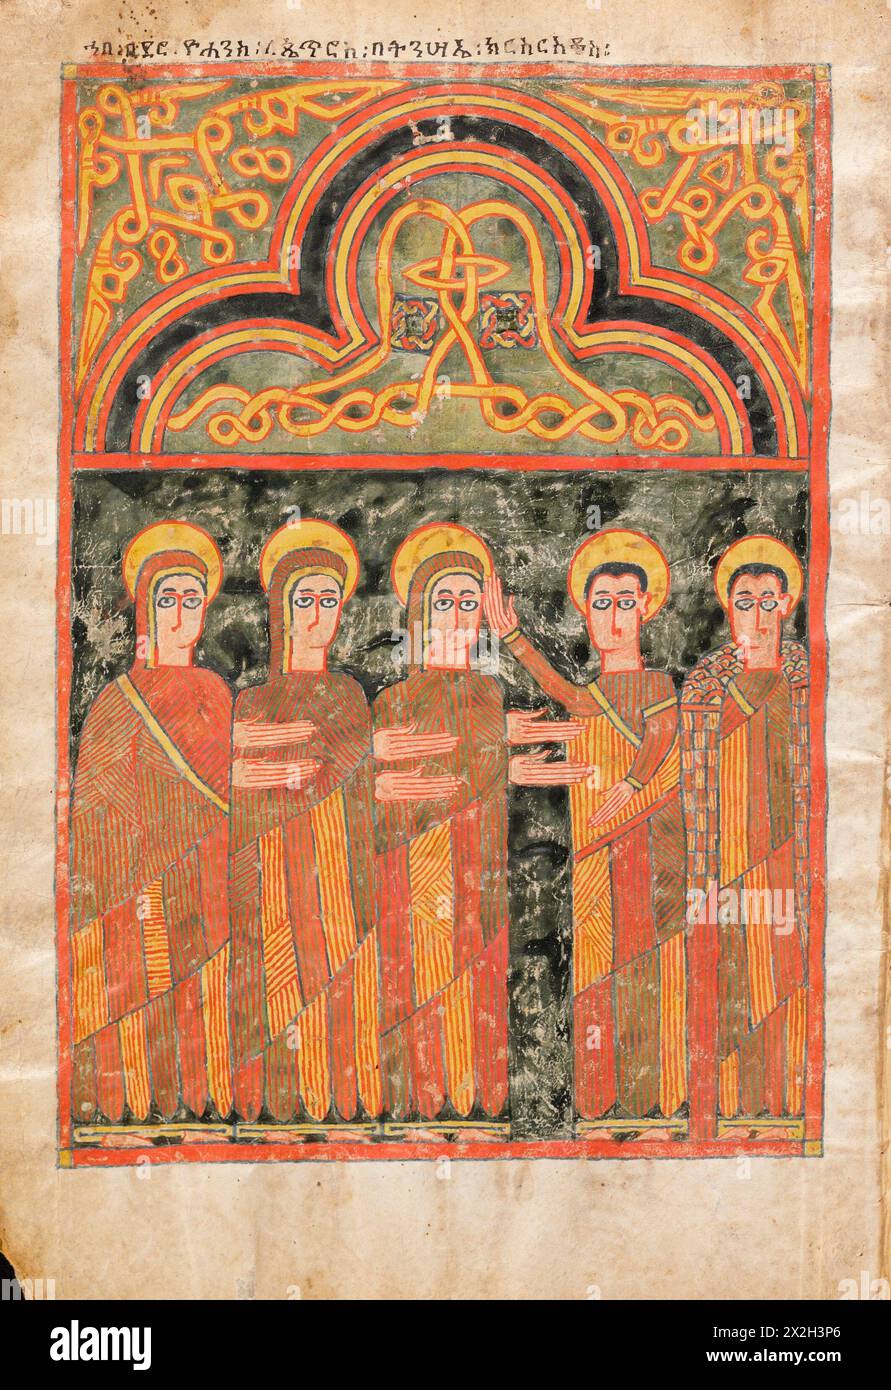 Evangile illuminé - peuples Amhara -L'apparence du Christ ressuscité- fin du XIVe au début du XVe siècle Banque D'Images